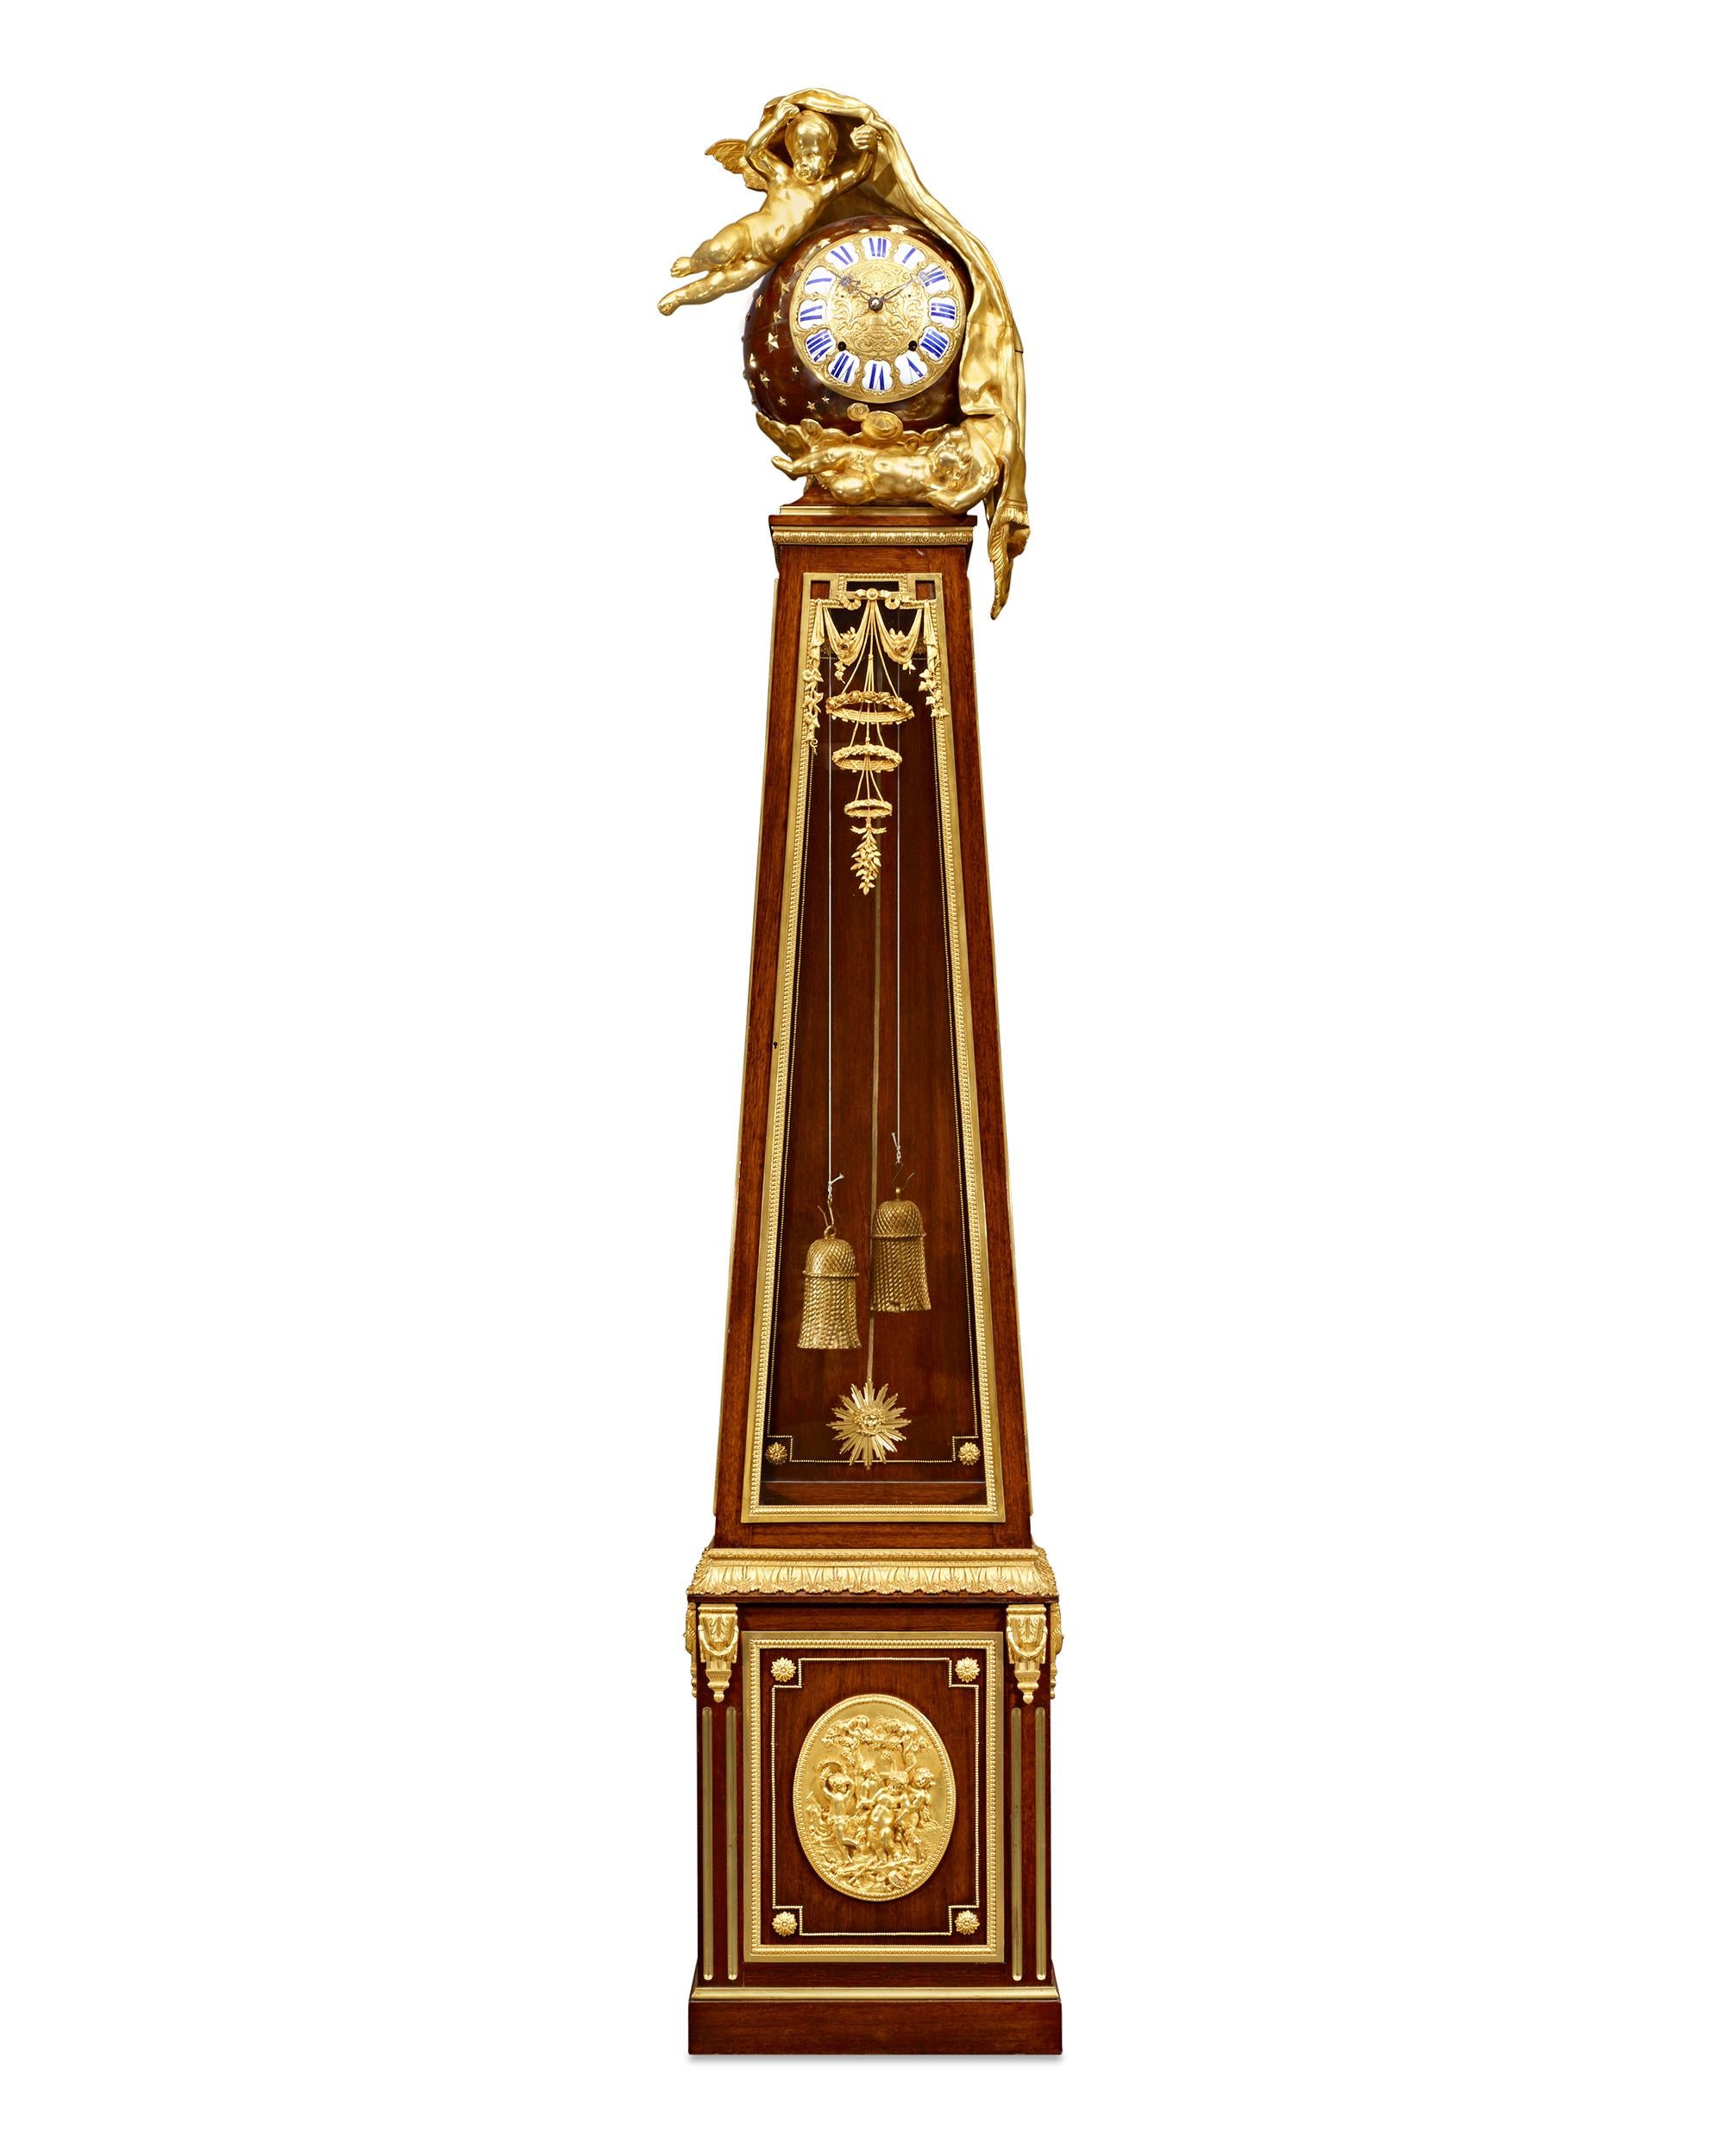 Cette monumentale horloge à régulateur de style Louis XVI est à la fois une merveille d'innovation horlogère et un parangon de finesse artistique. Ce garde-temps, qui rappelle le célèbre régulateur de parquet de Jean-Henri Riesener, conservé dans